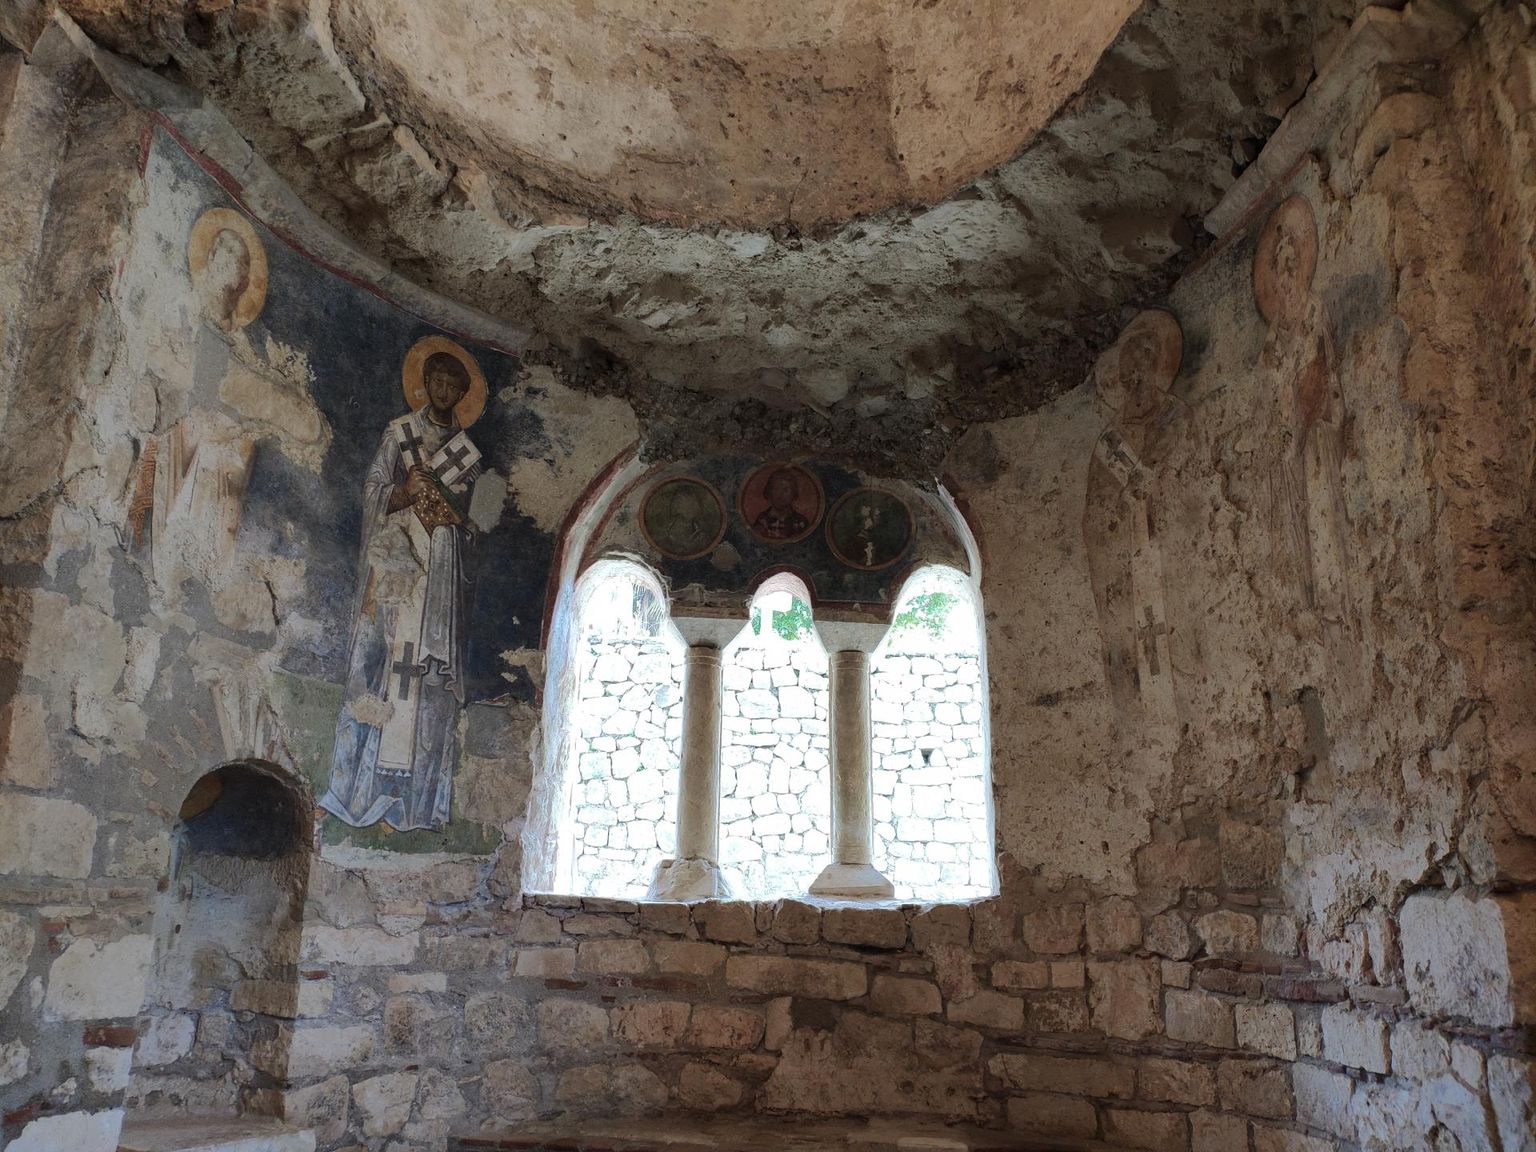 Püha Nikolause kiriku näol Myras on praegu tegu XIX sajandil väljakaevatud ja korralikult renoveeritud varemetega. Kirikus on säilinud rohkeid freskoelemente.